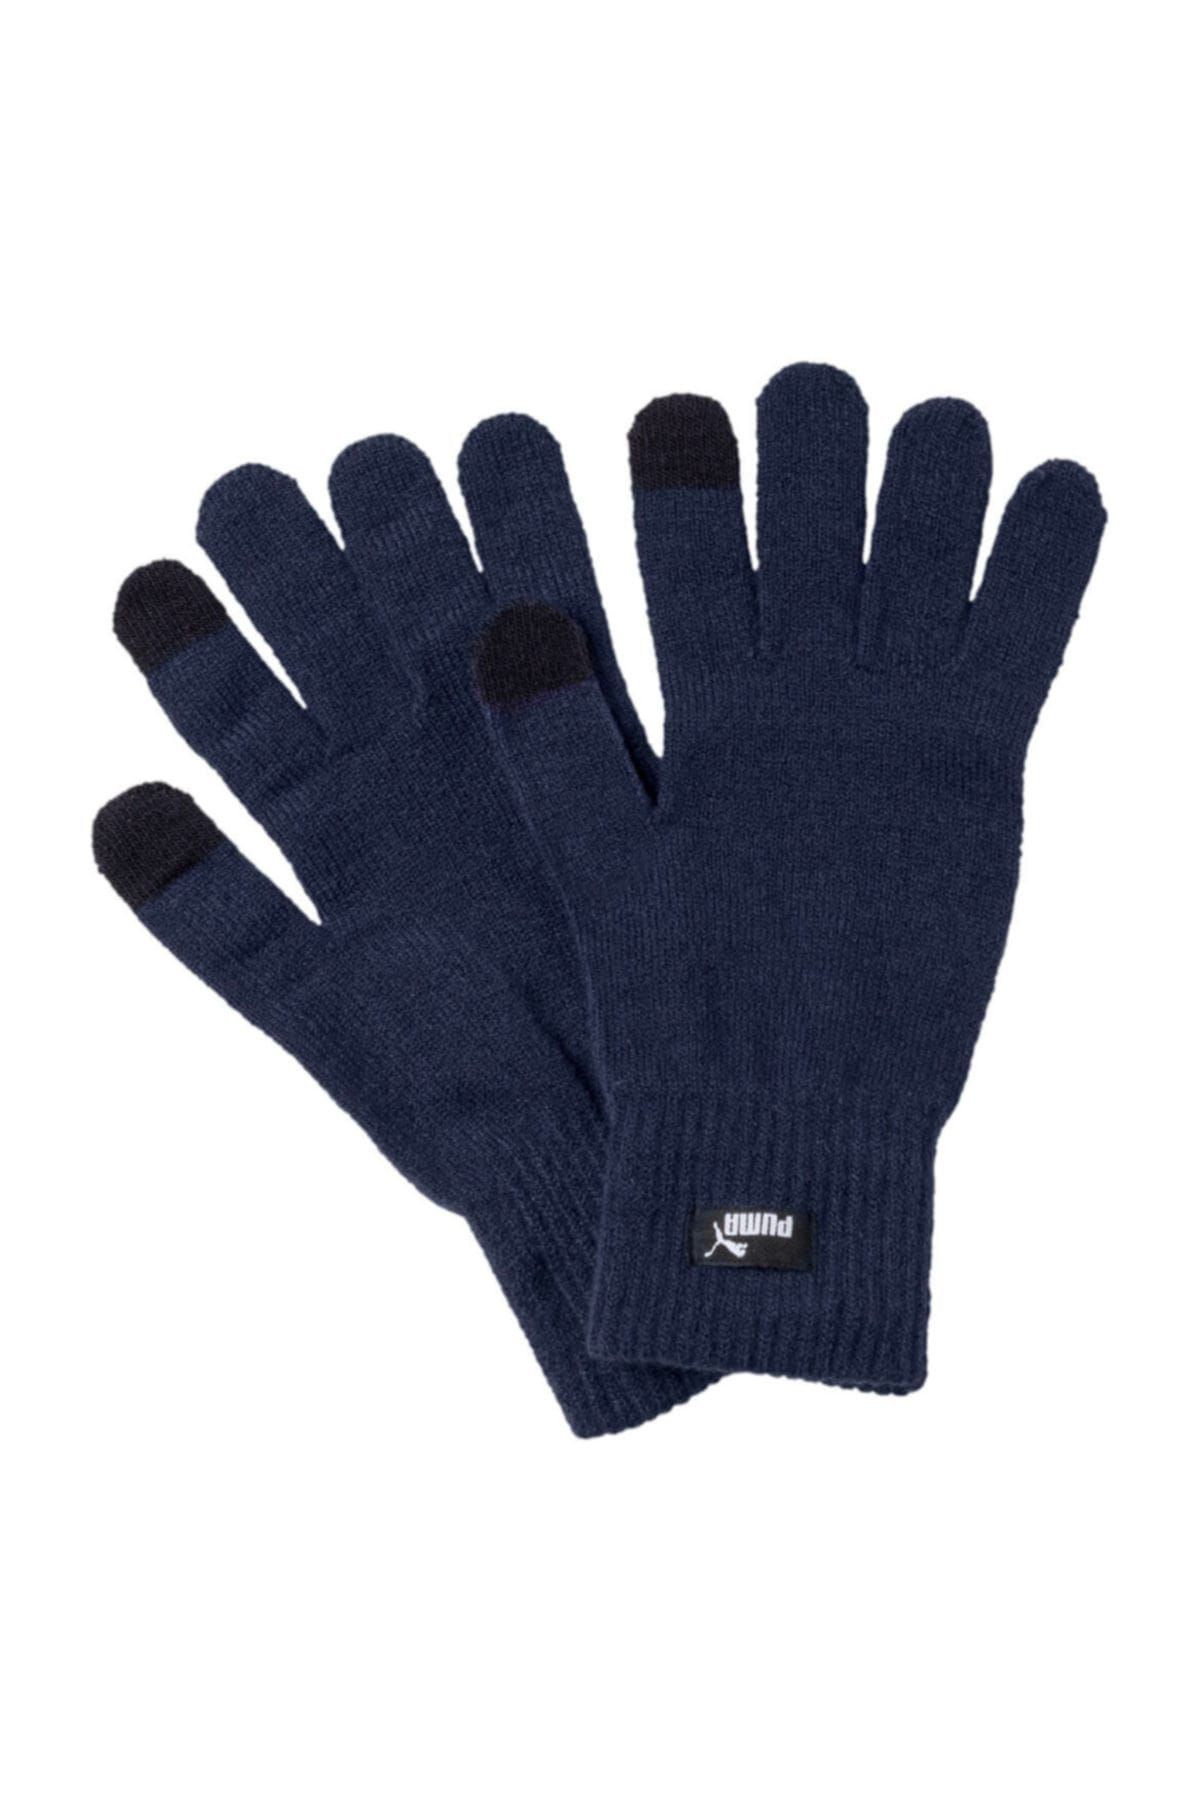 Puma Erkek Eldiven - Eldiven Knit Gloves Peacoat - N.1 Logo - 04131605